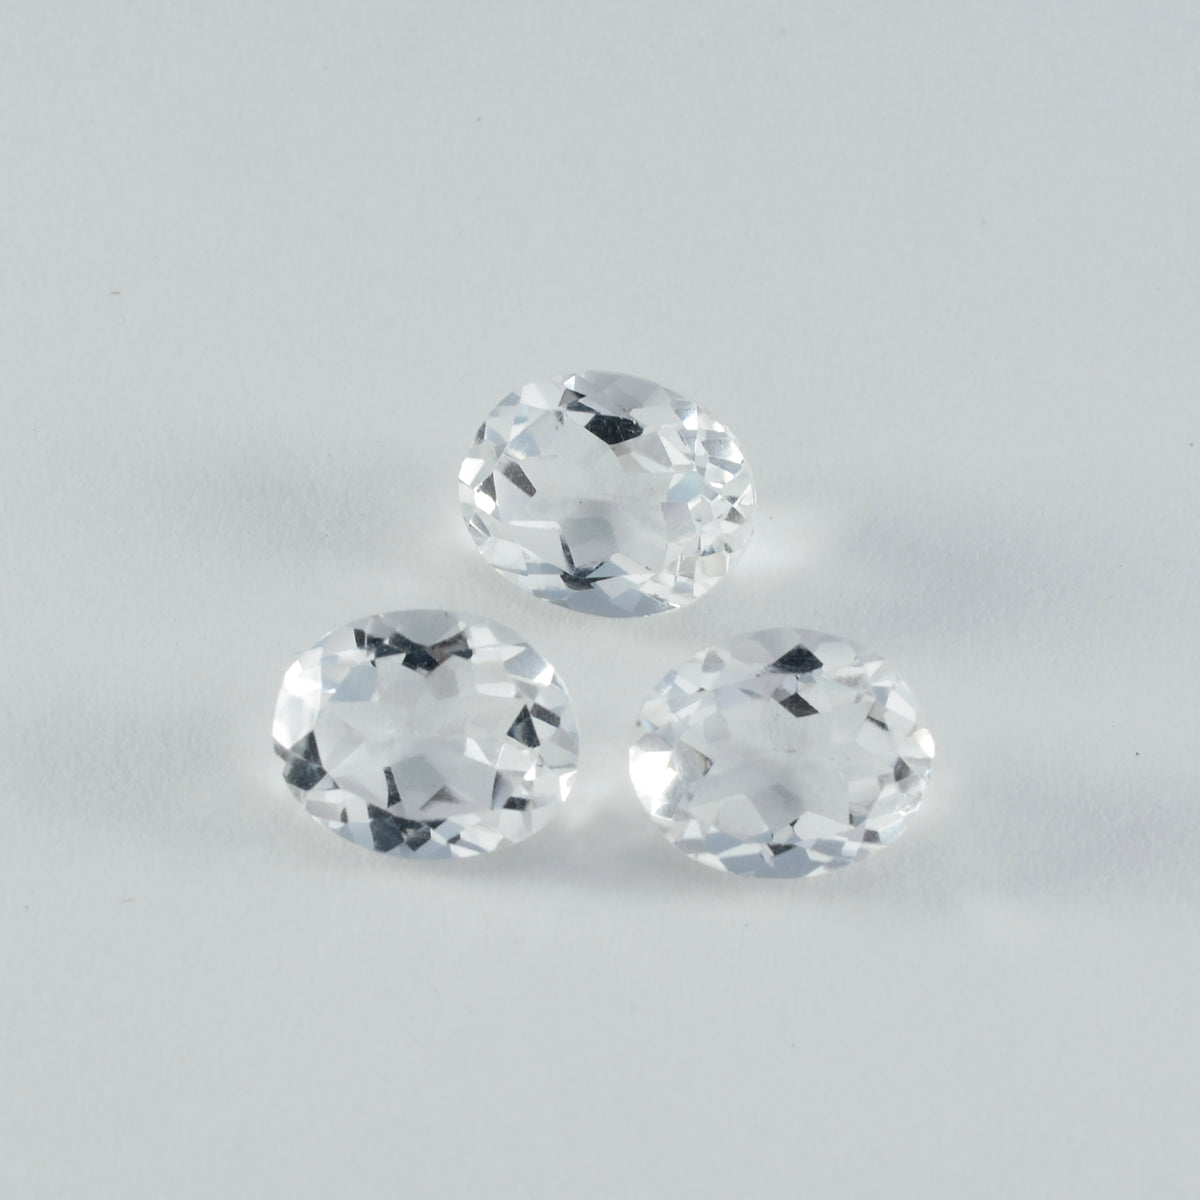 Riyogems 1PC wit kristalkwarts gefacetteerd 8x10 mm ovale vorm mooie kwaliteitsedelsteen